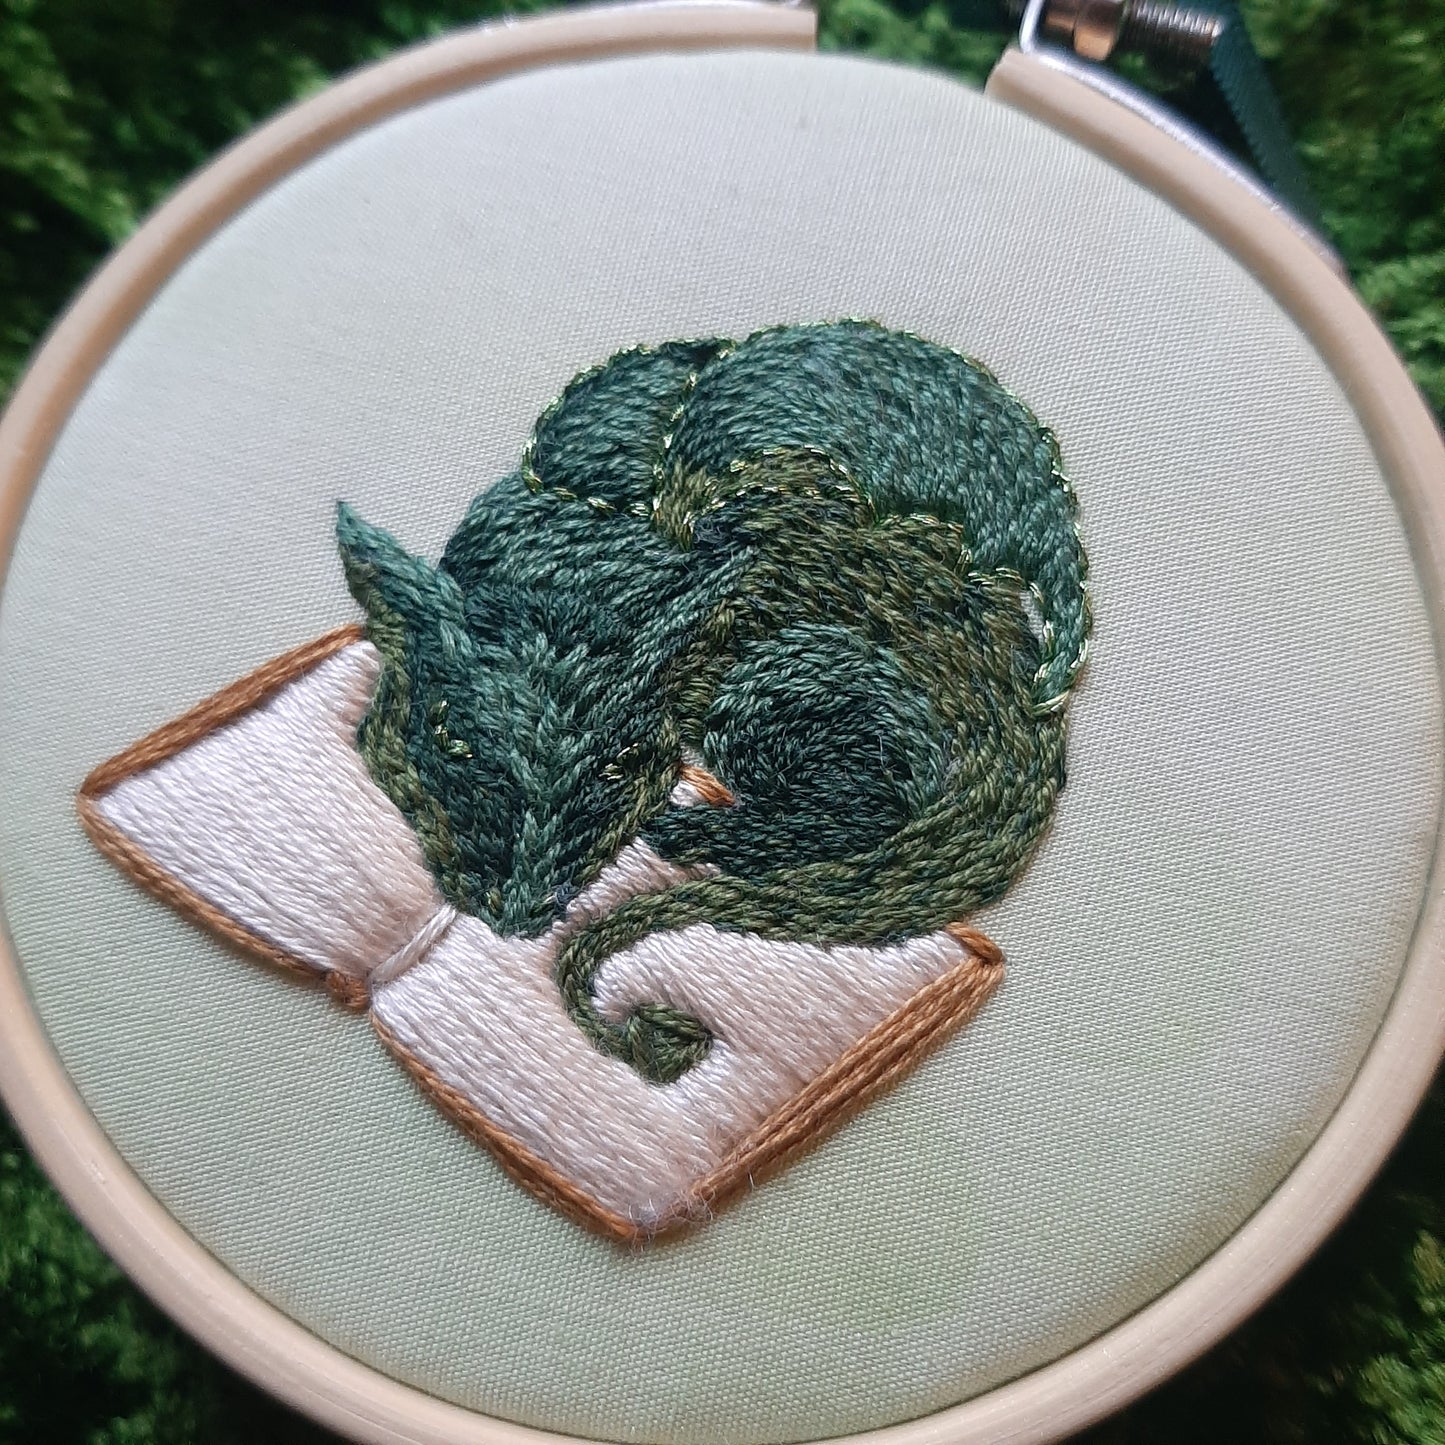 Cedric the Book Dragon Embroidery